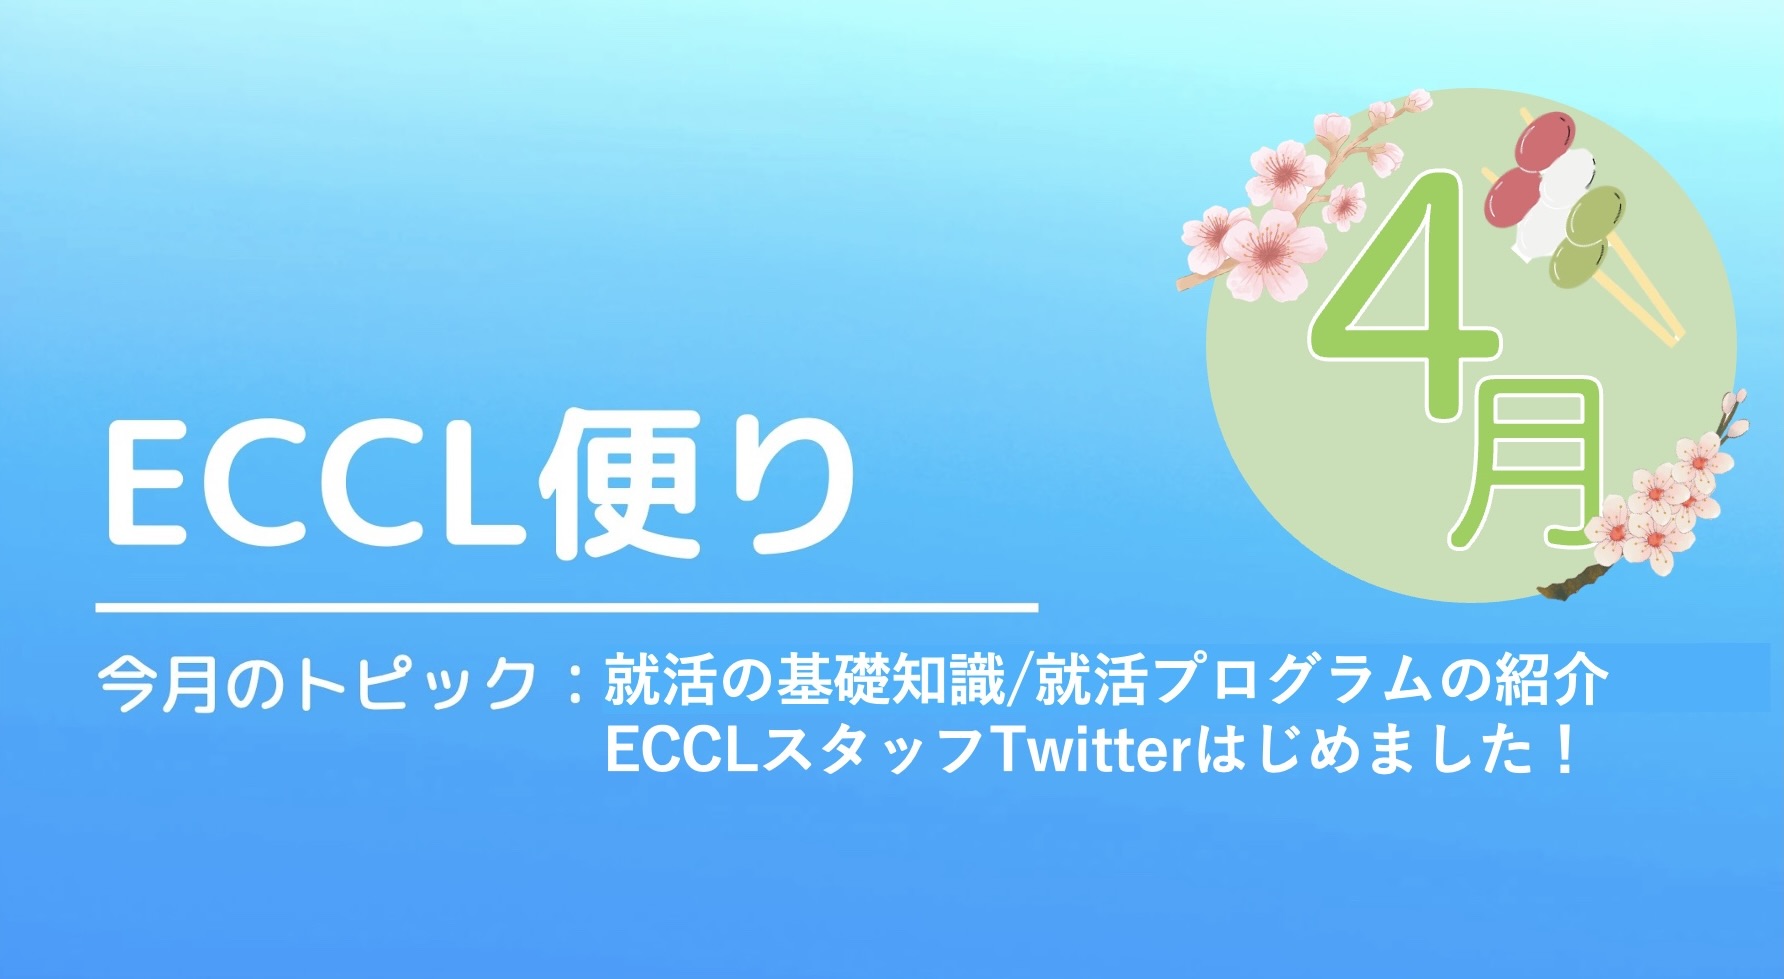 ECCL便り4月号♪